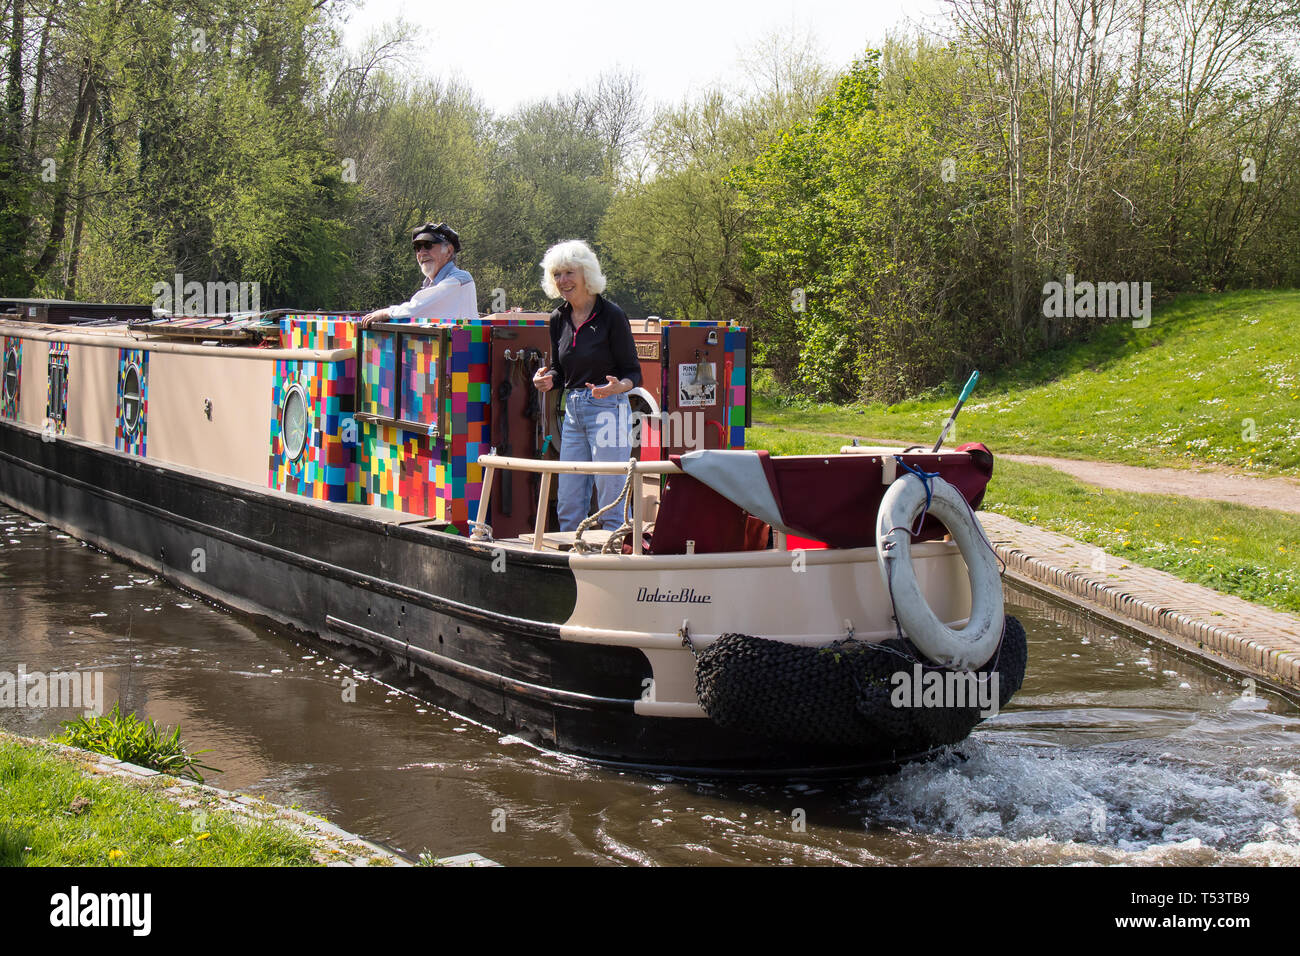 Ein pensionierter kaukasischer Pärchen, der an einem sonnigen Morgen im Frühling das Leben auf den britischen Kanälen an Bord ihres britischen Schmalboot-Kanals genießt. Stockfoto